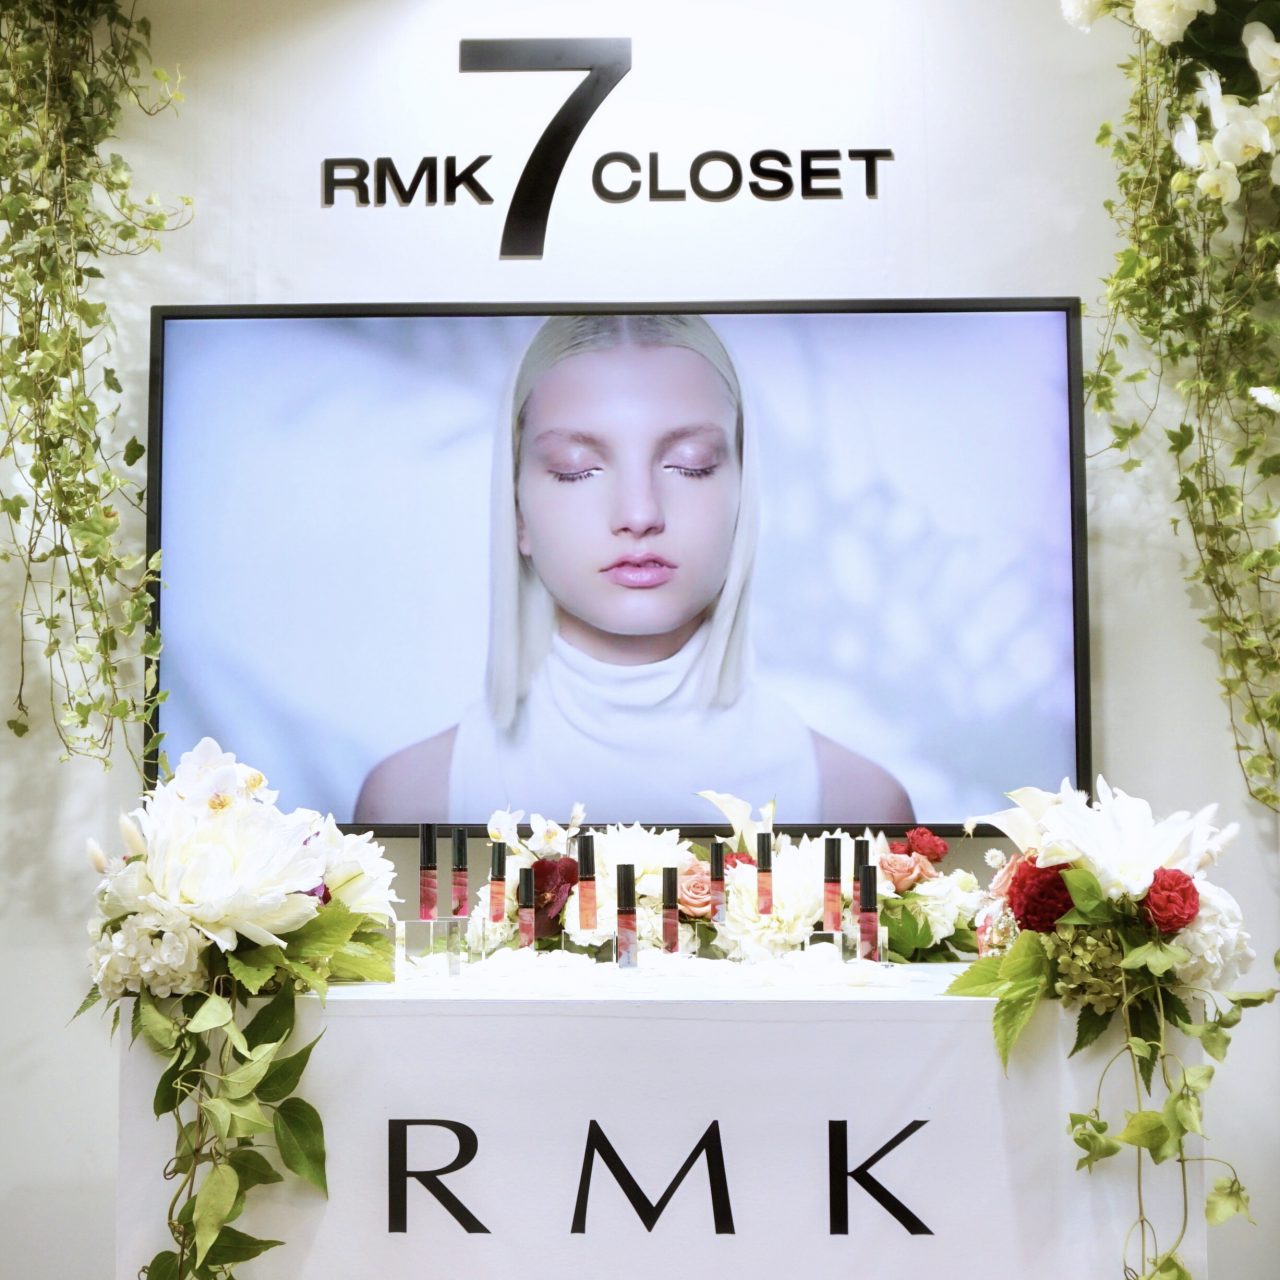 ゼロベース表参道にpop-up-store「rmk-7-closet」が登場